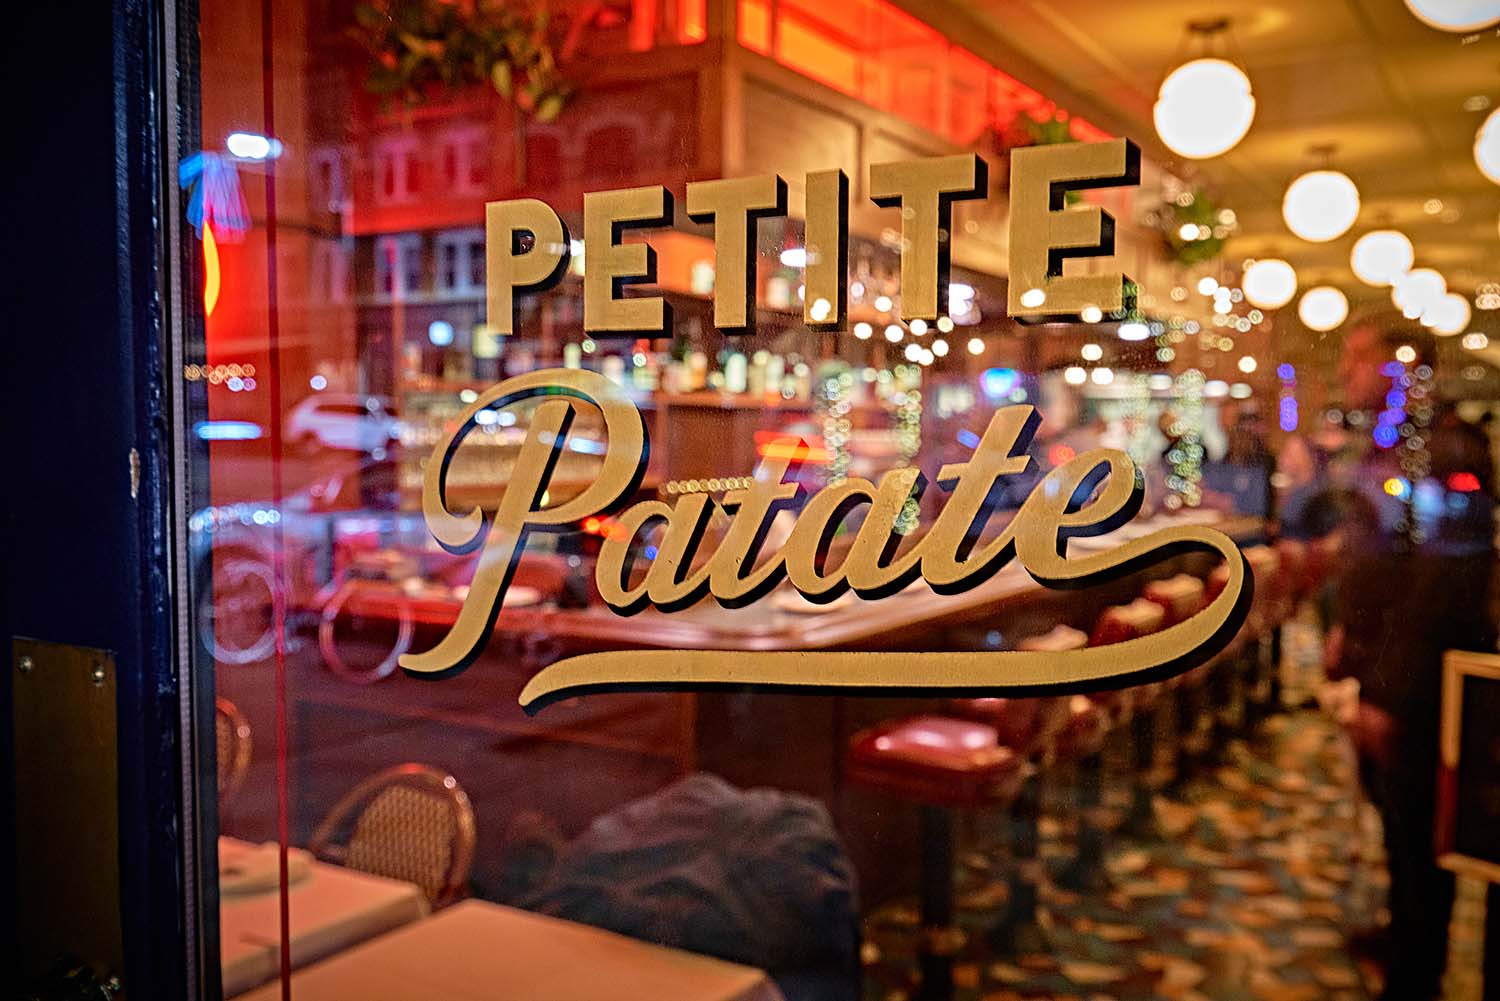 Petite Patate布鲁克林展望高地餐厅由Greg Baxtrom